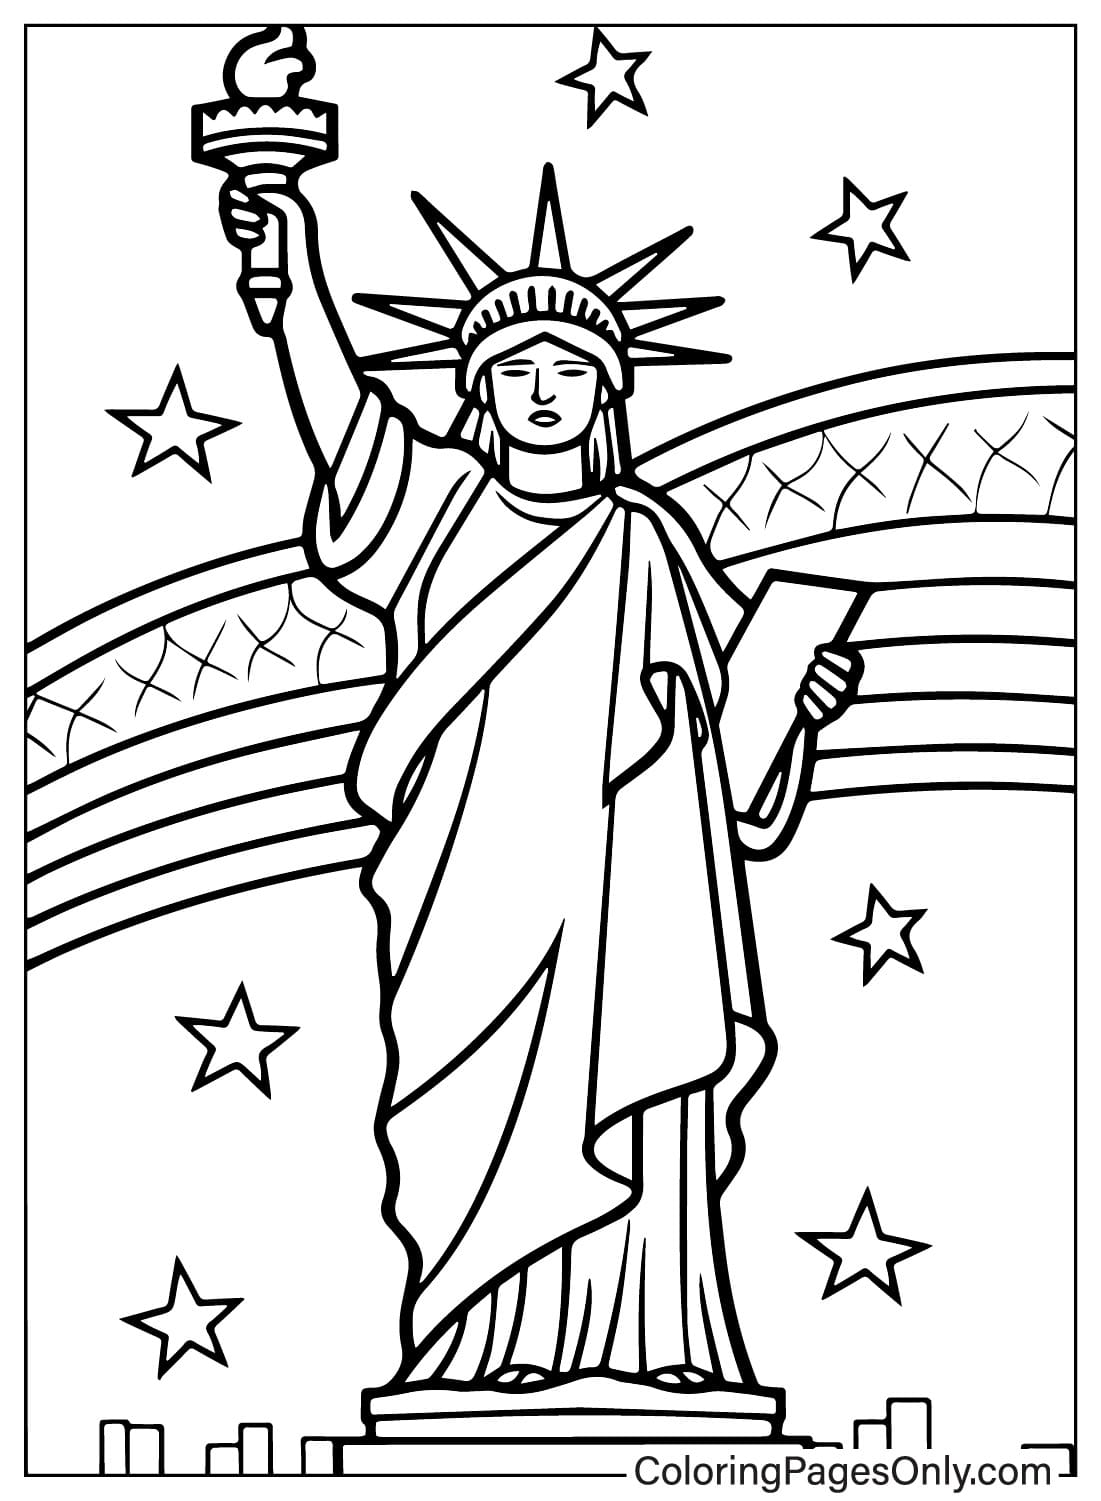 Página para colorear de la Estatua de la Libertad de Estatua de la Libertad